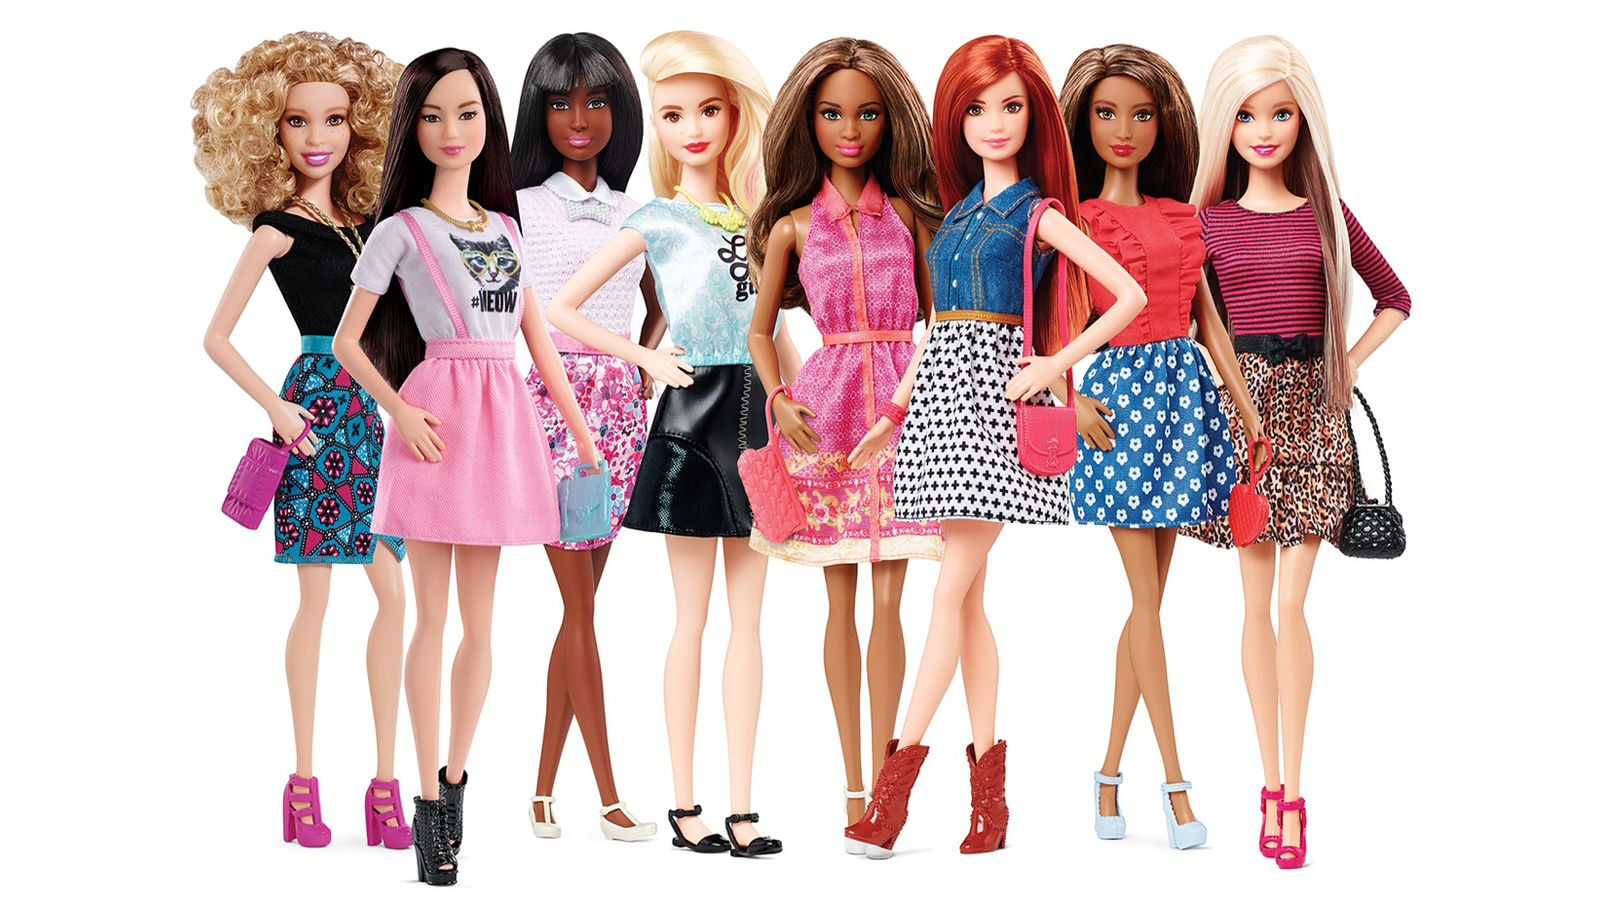 Sejarah 9 Maret: Lahirnya Boneka Barbie yang Fenomenal